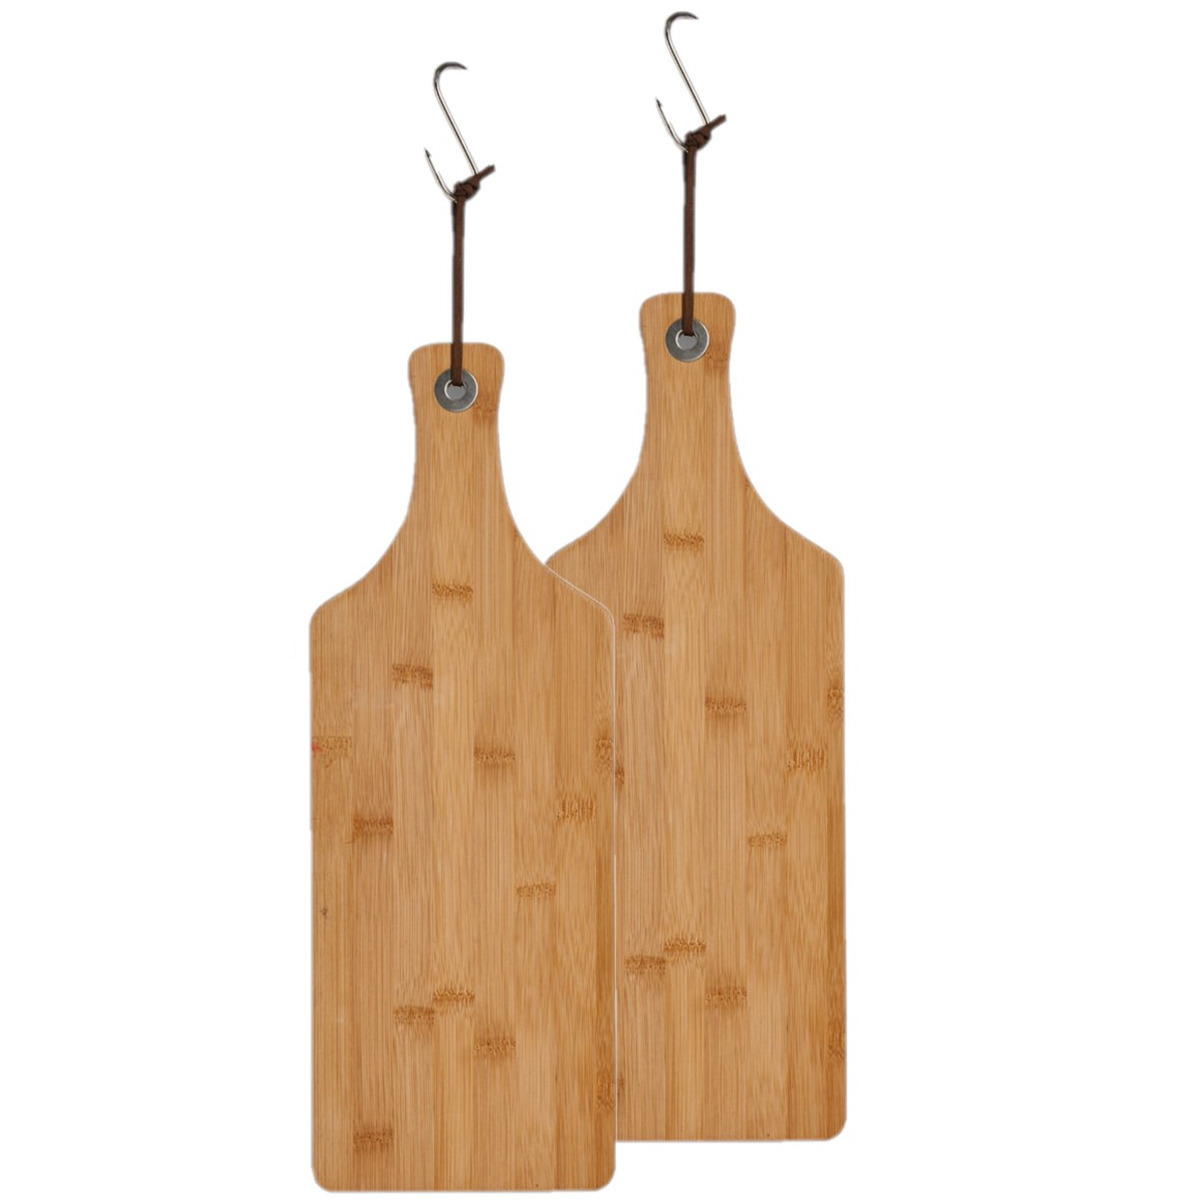 2x stuks bamboe houten snijplanken-serveerplanken met handvat 44 x 16 cm